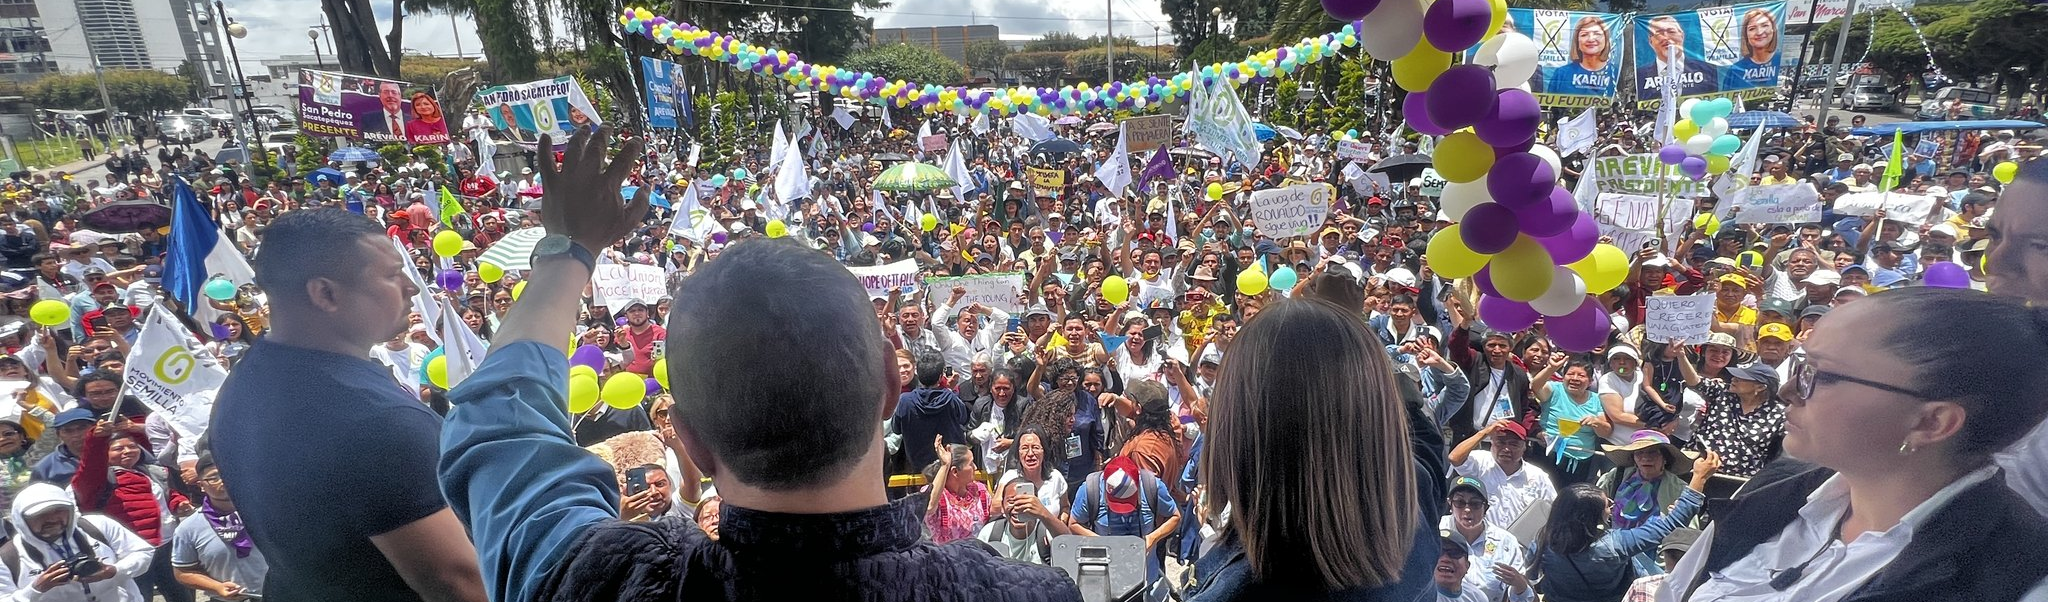 EXCLUSIVO | Revolução é recuperar a democracia, diz novo presidente da Guatemala